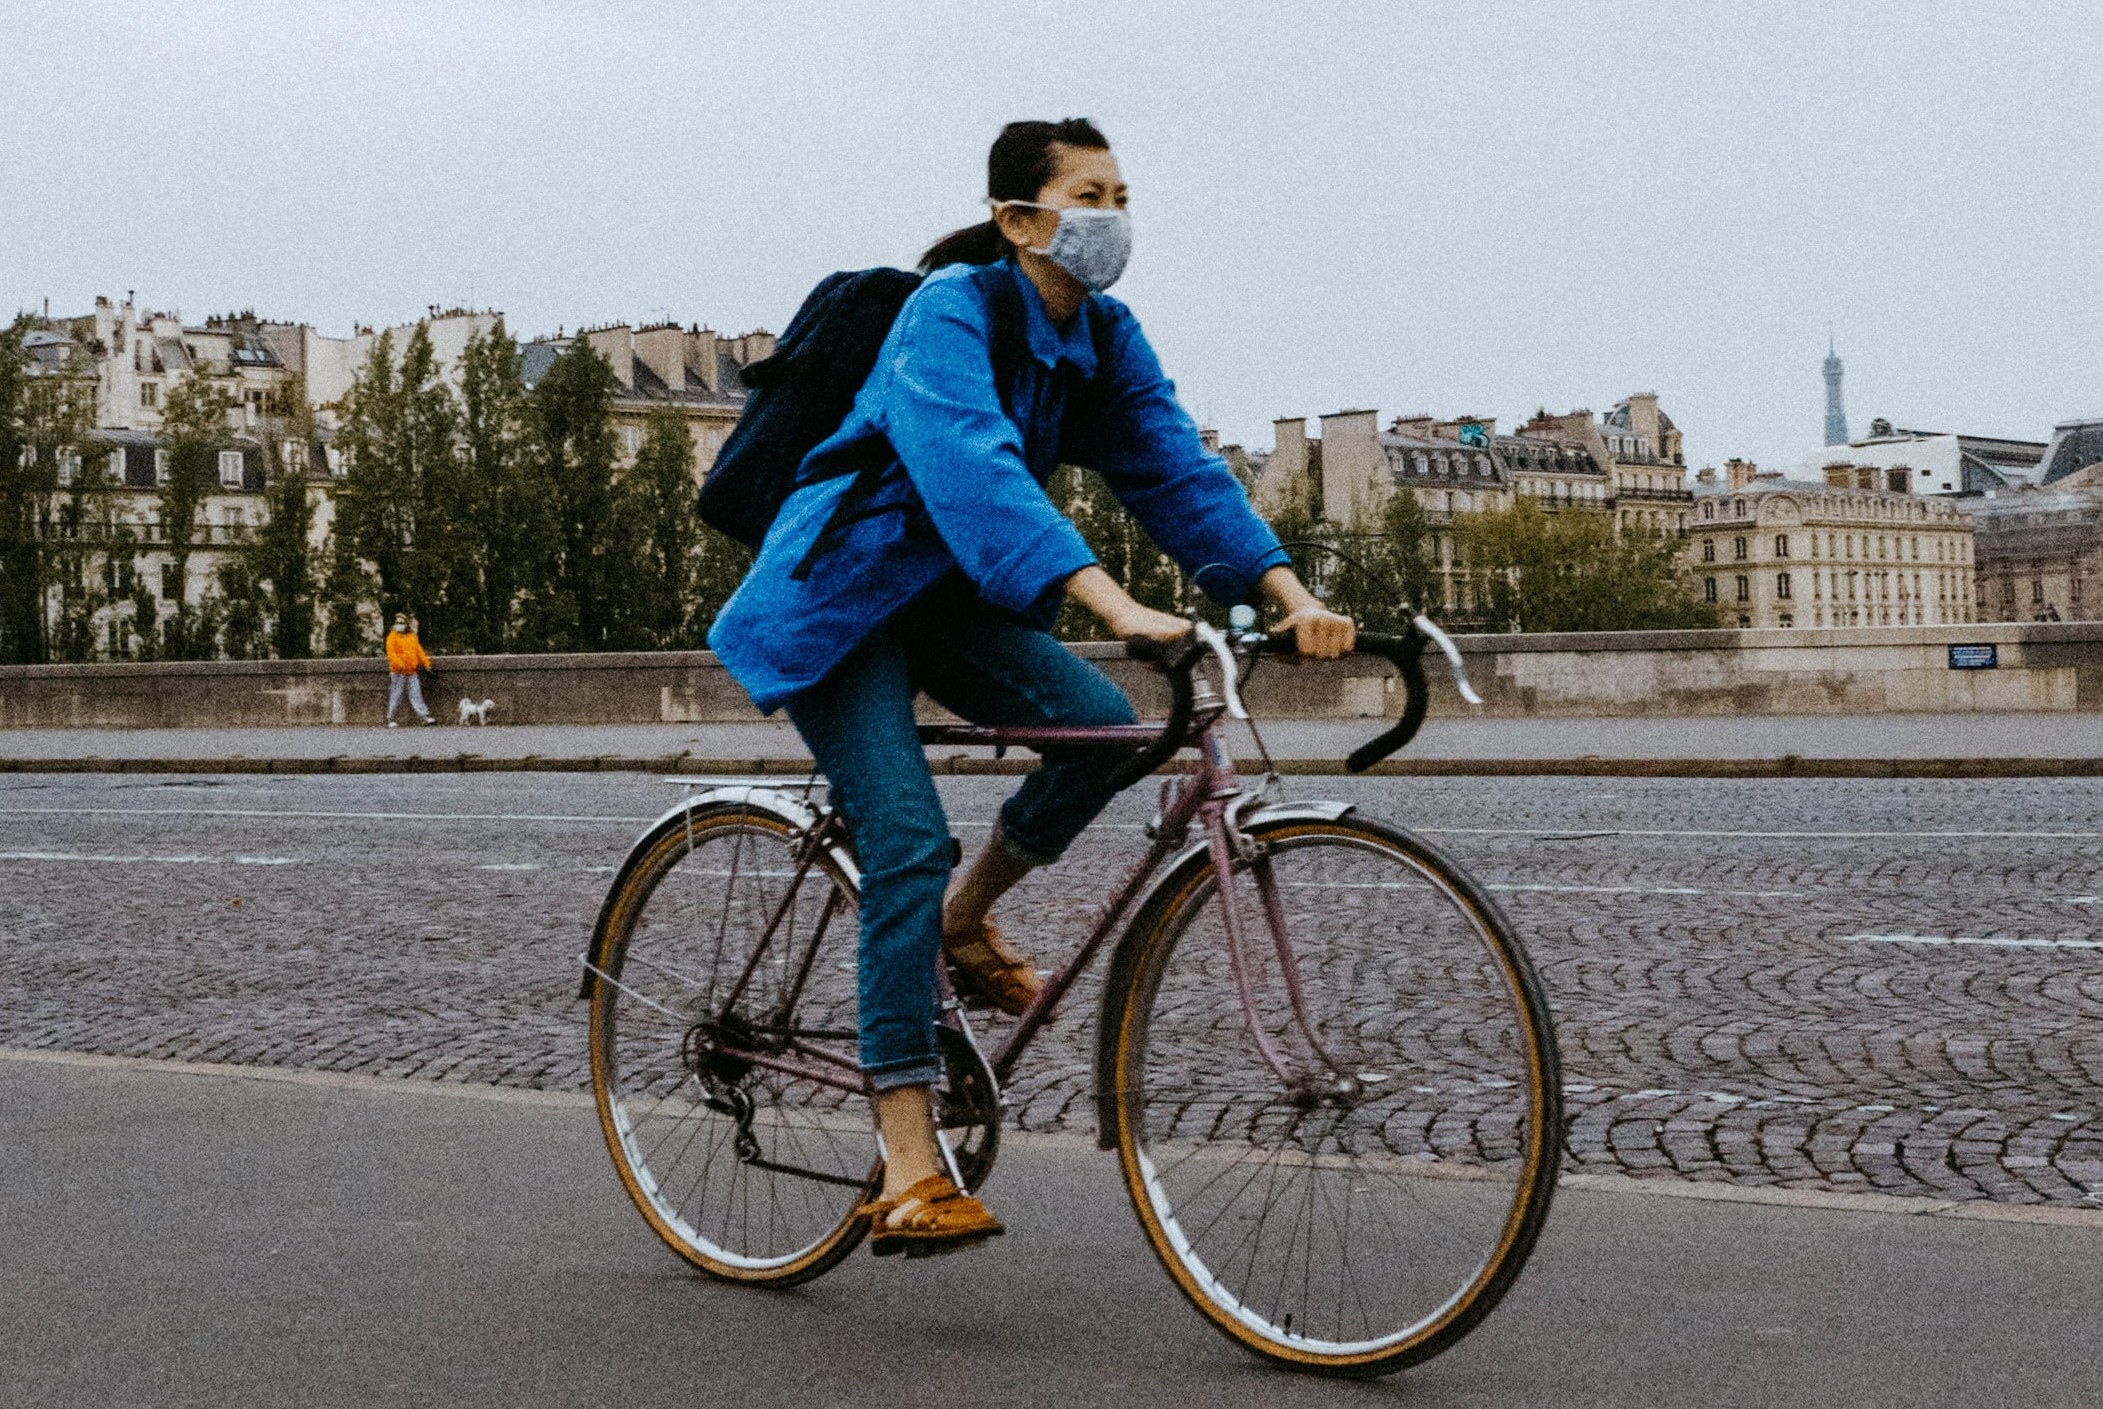 Cientistas não encontraram evidências de que a máscara pudesse comprometer a respiração de pessoas saudáveis durante exercícios físicos (Foto: Alexandre Van Thuan / Unsplash)